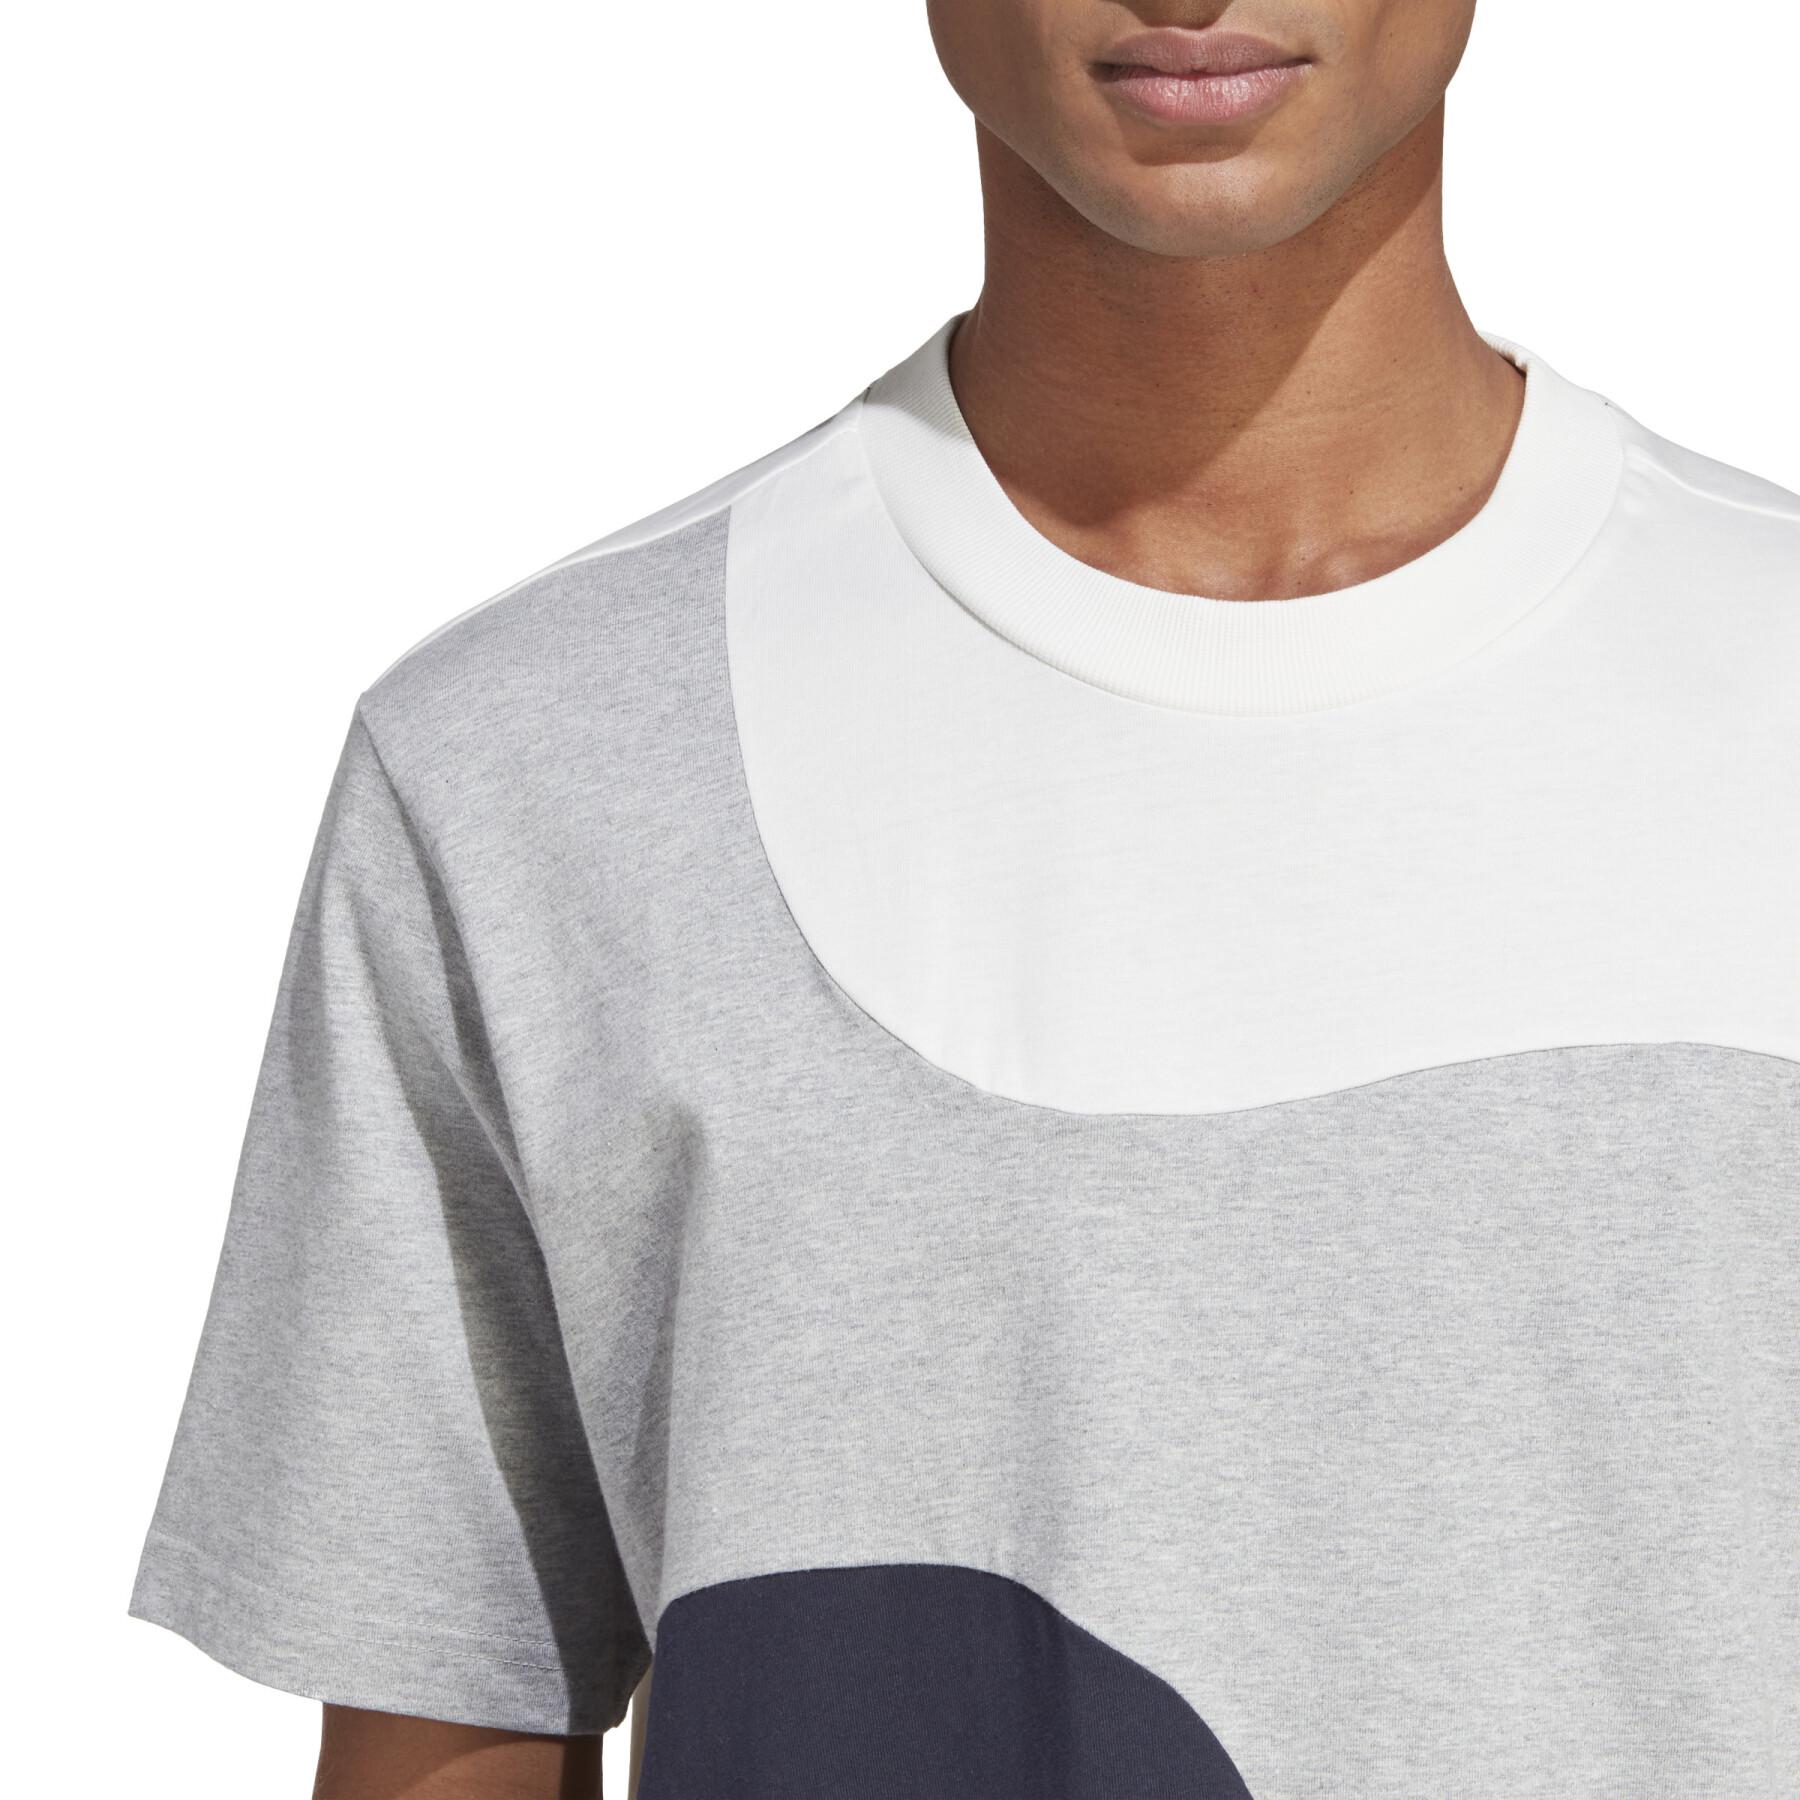 Camiseta adidas Marimekko Future Icons 3-Stripes